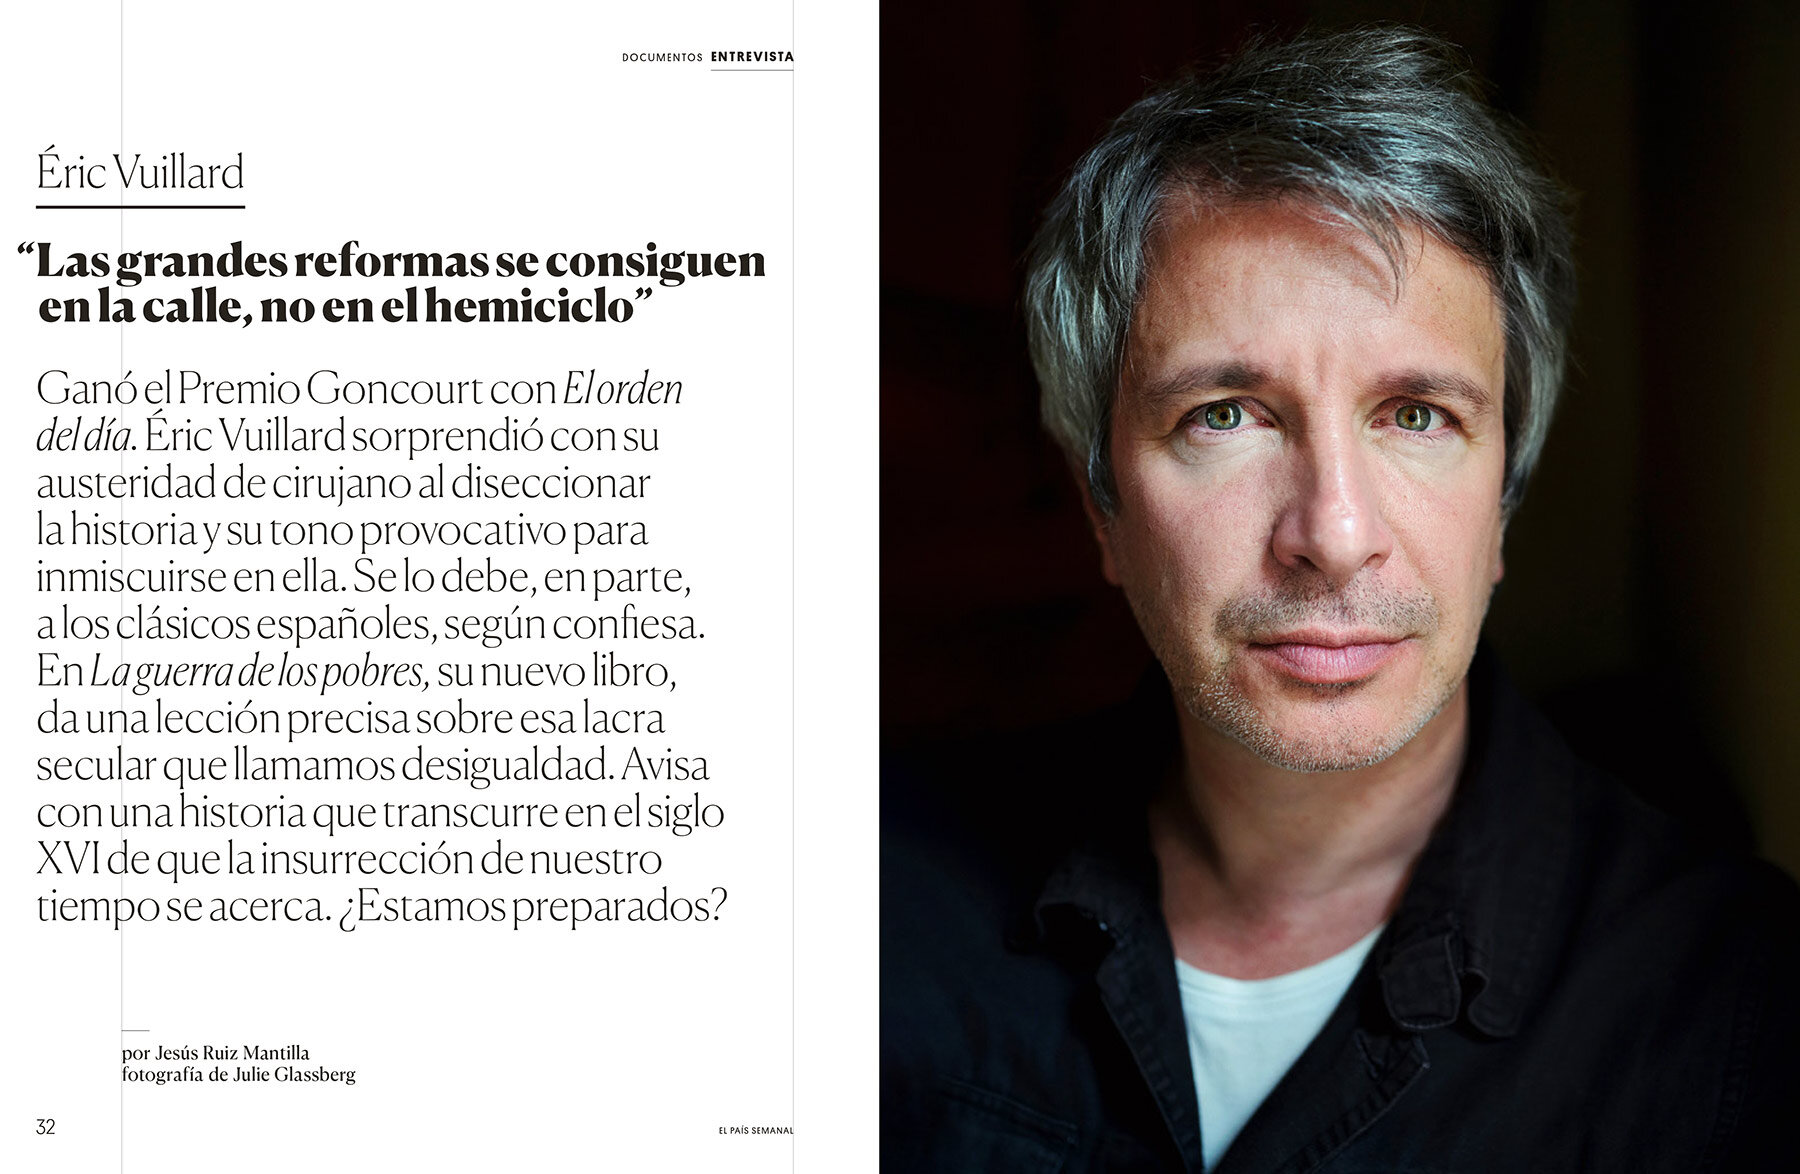 Eric Vuillard for El País Semanal